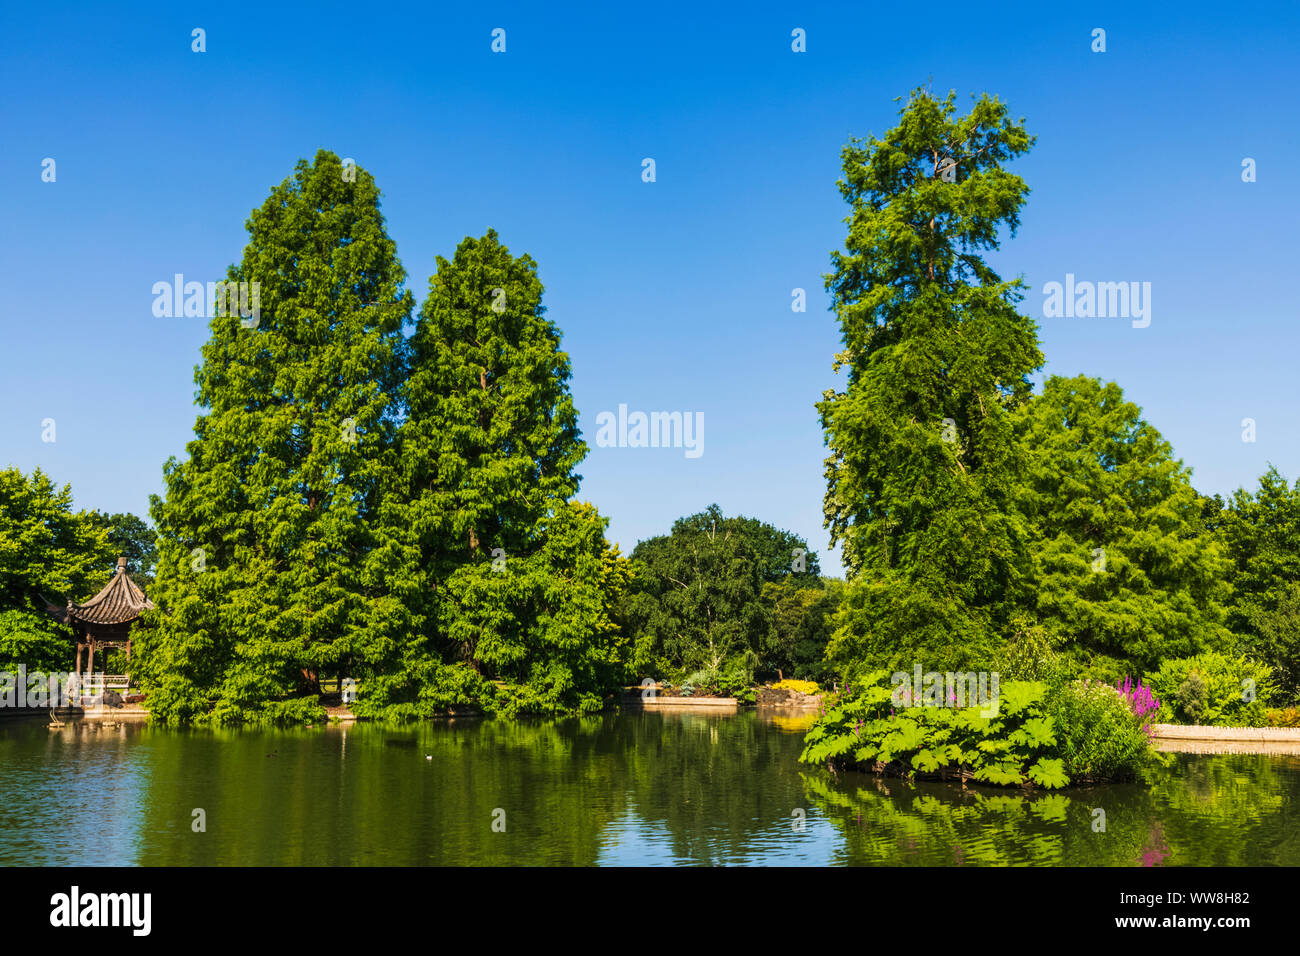 England, Surrey, Guildford, Wisley, der Royal Horticultural Society Garden, sieben Hektar großen Teich und die japanische Pagode Stockfoto